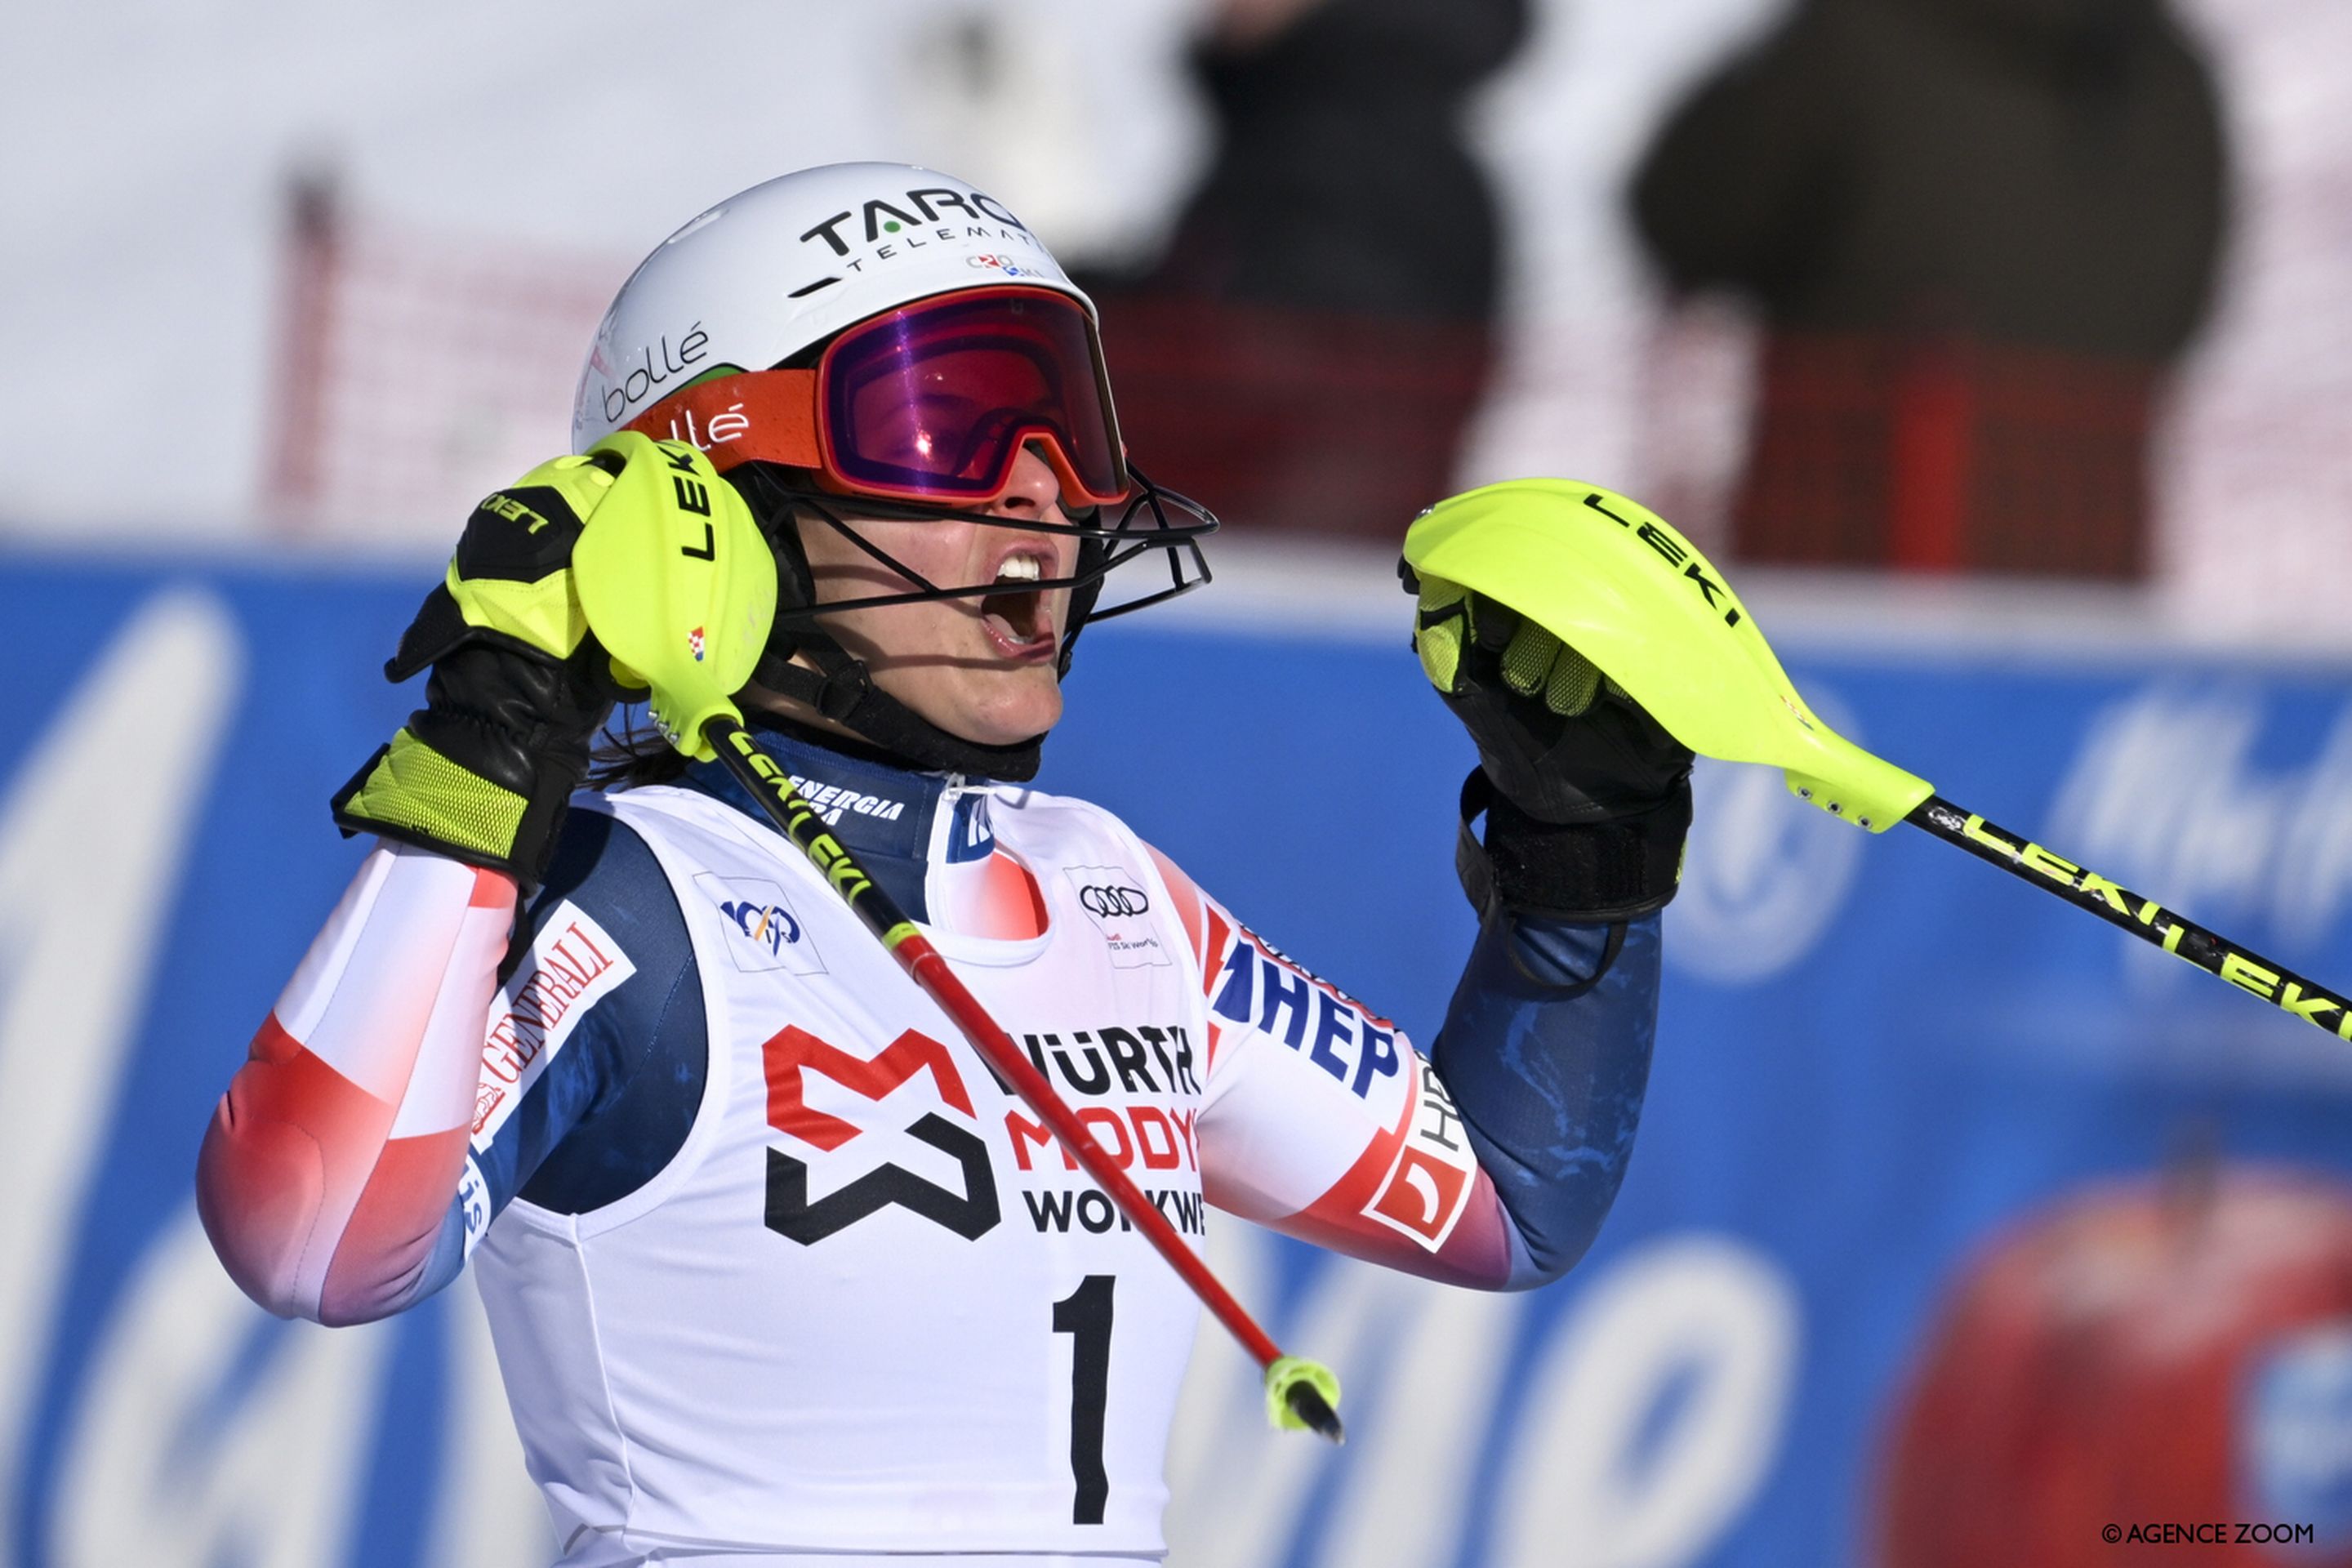 Zrinka Ljutic celebrates second place in the slalom in Are